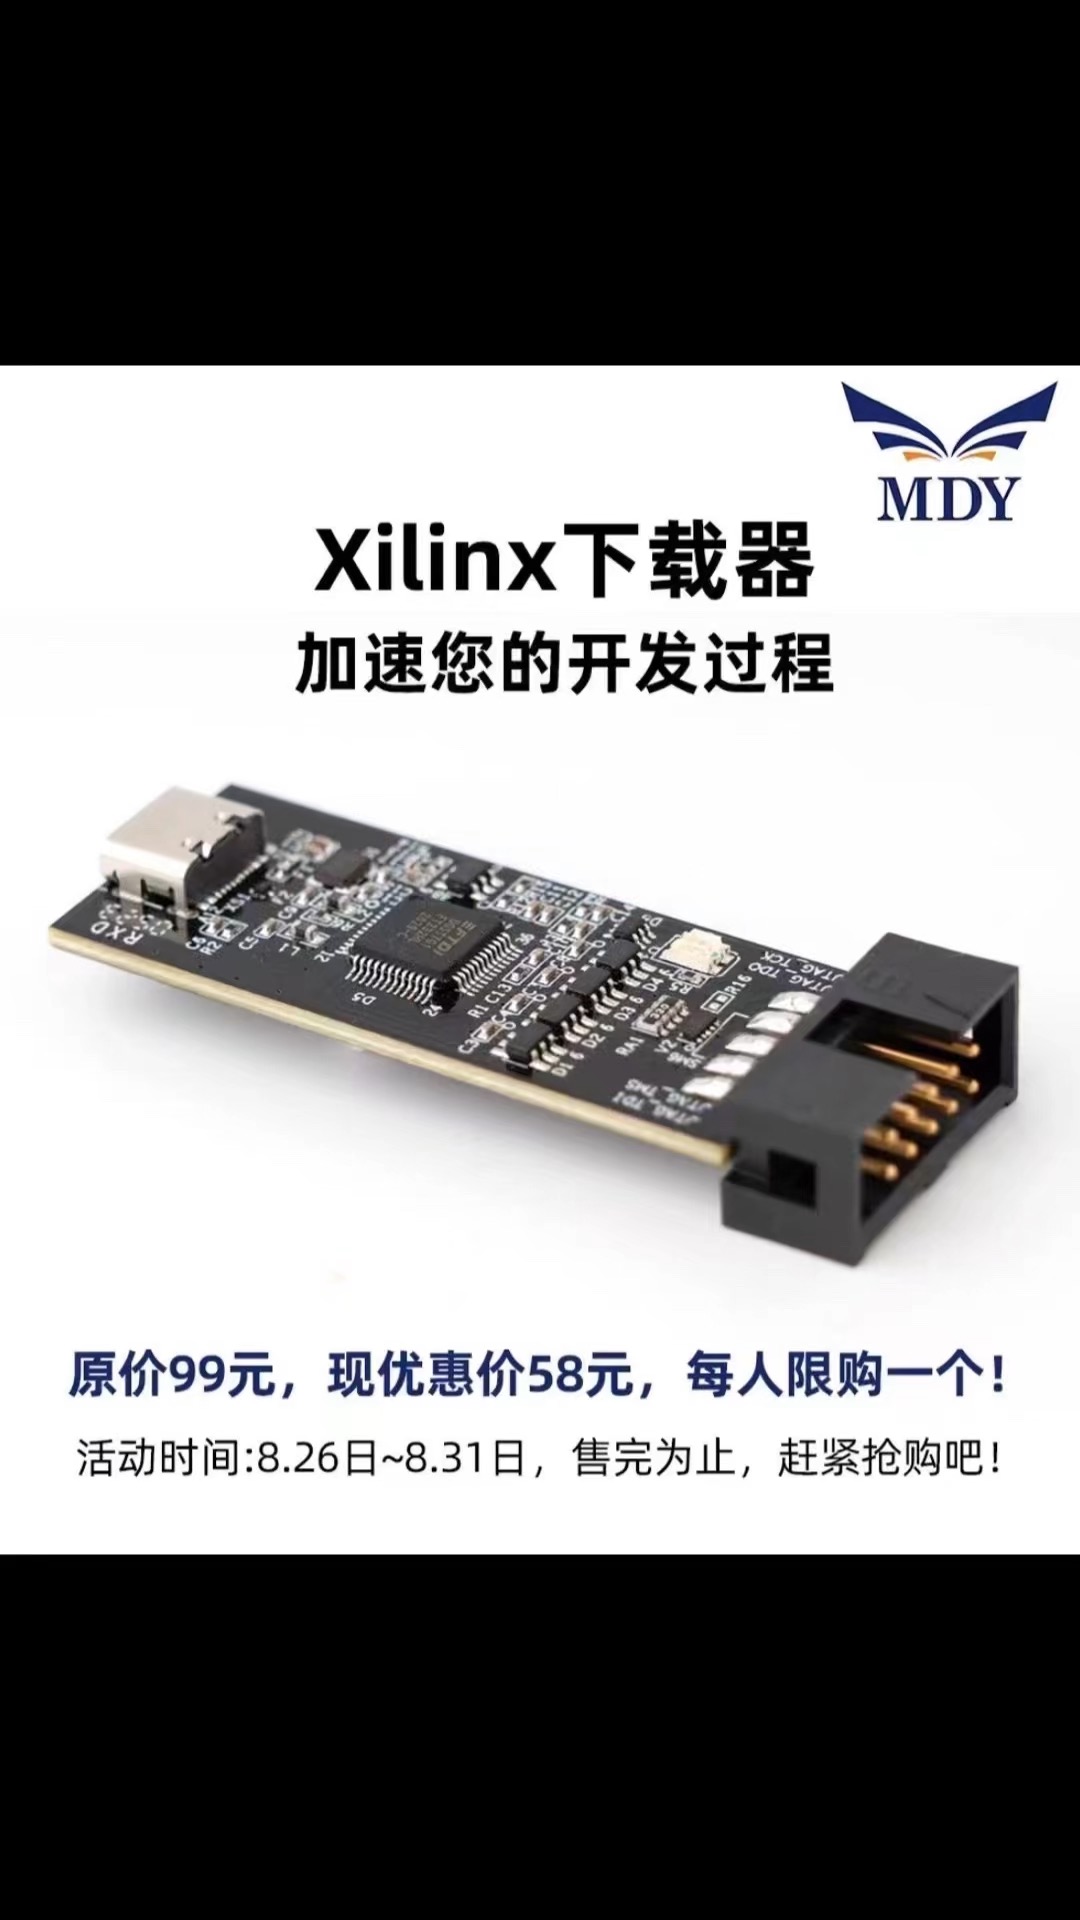 Xilinx 下載器